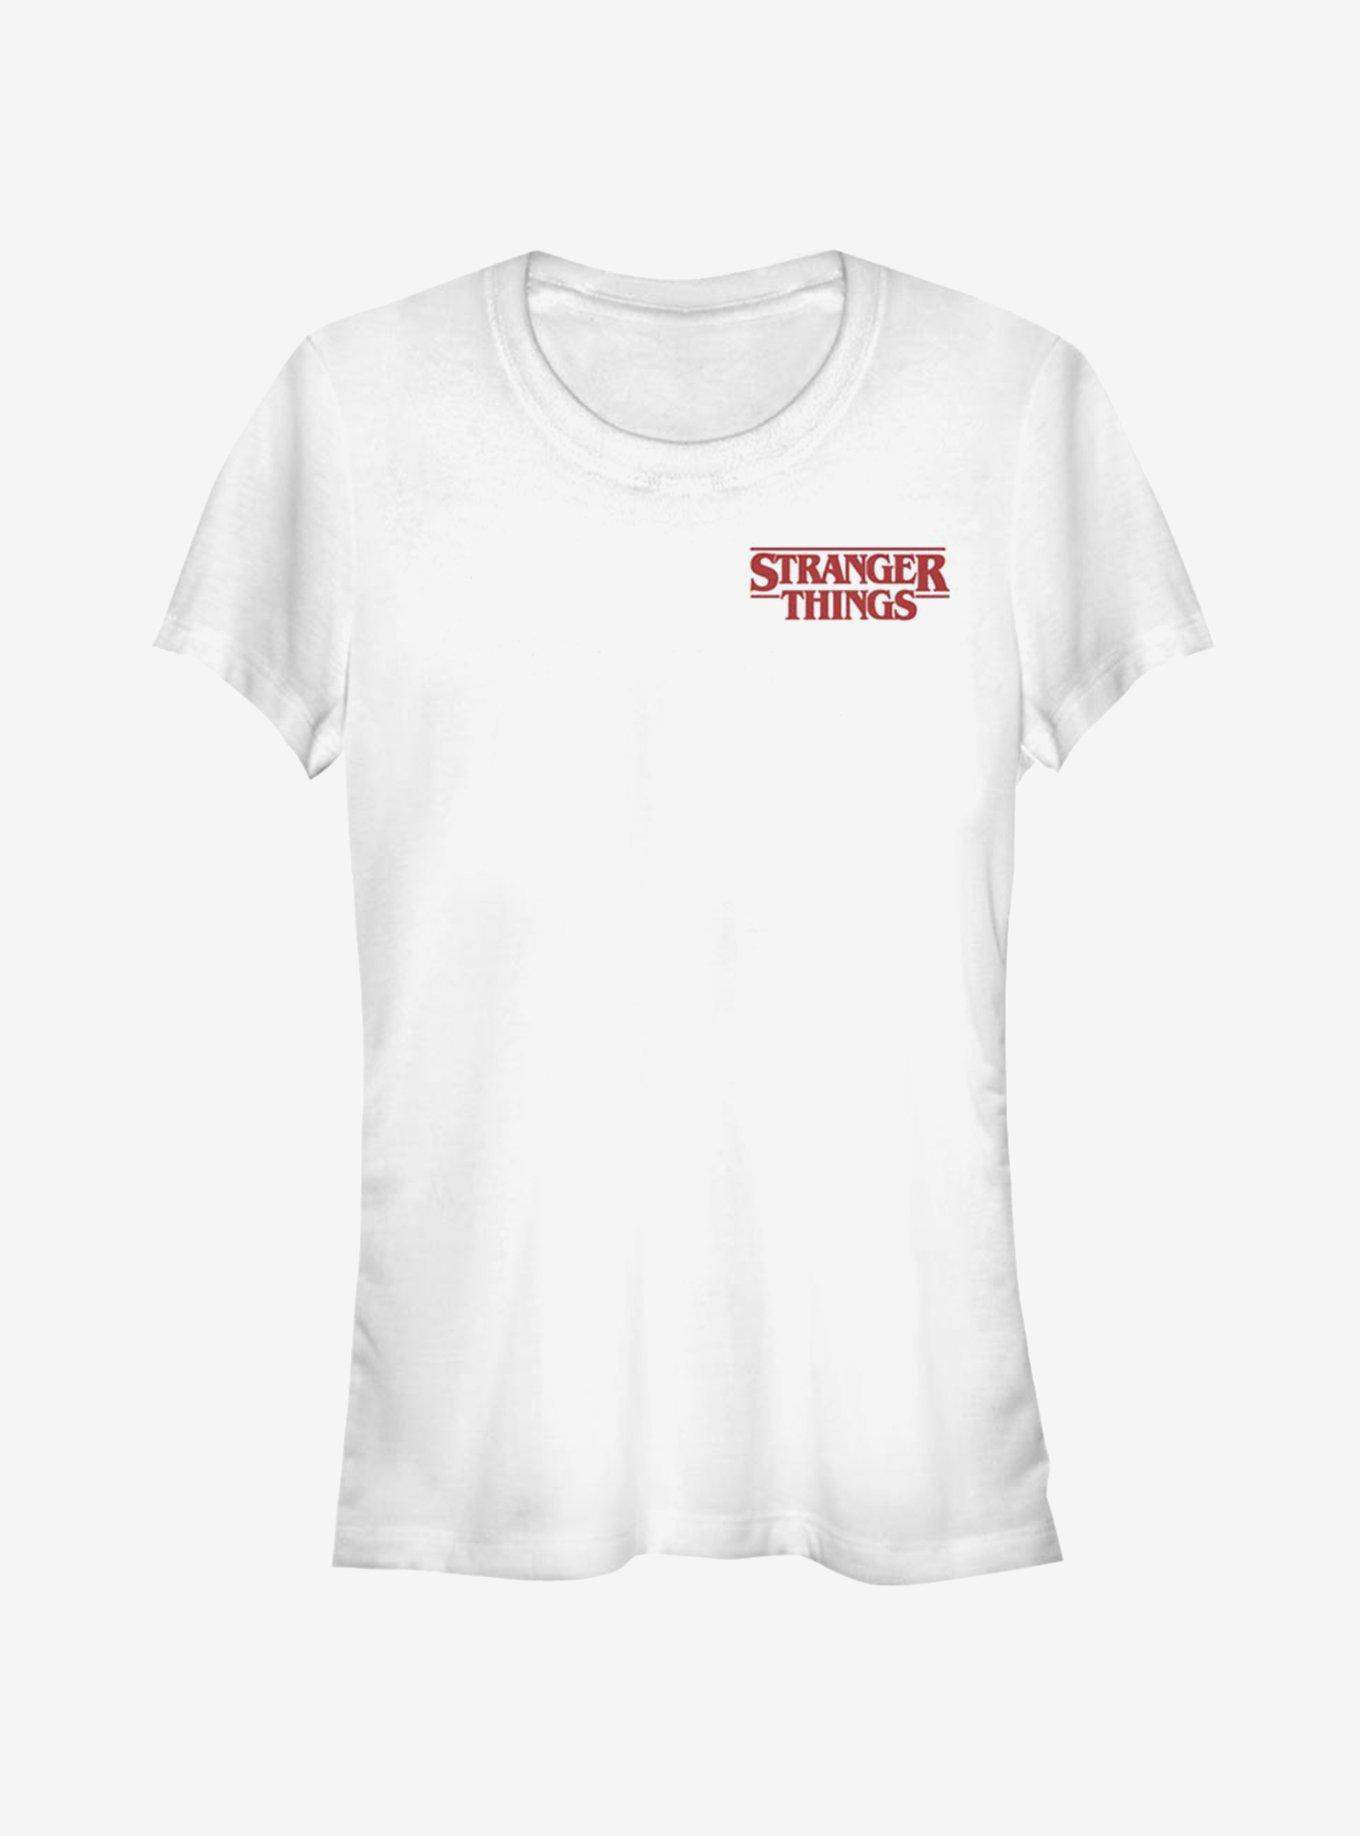 Stranger Things Chest Logo Girls T-Shirt, WHITE, hi-res